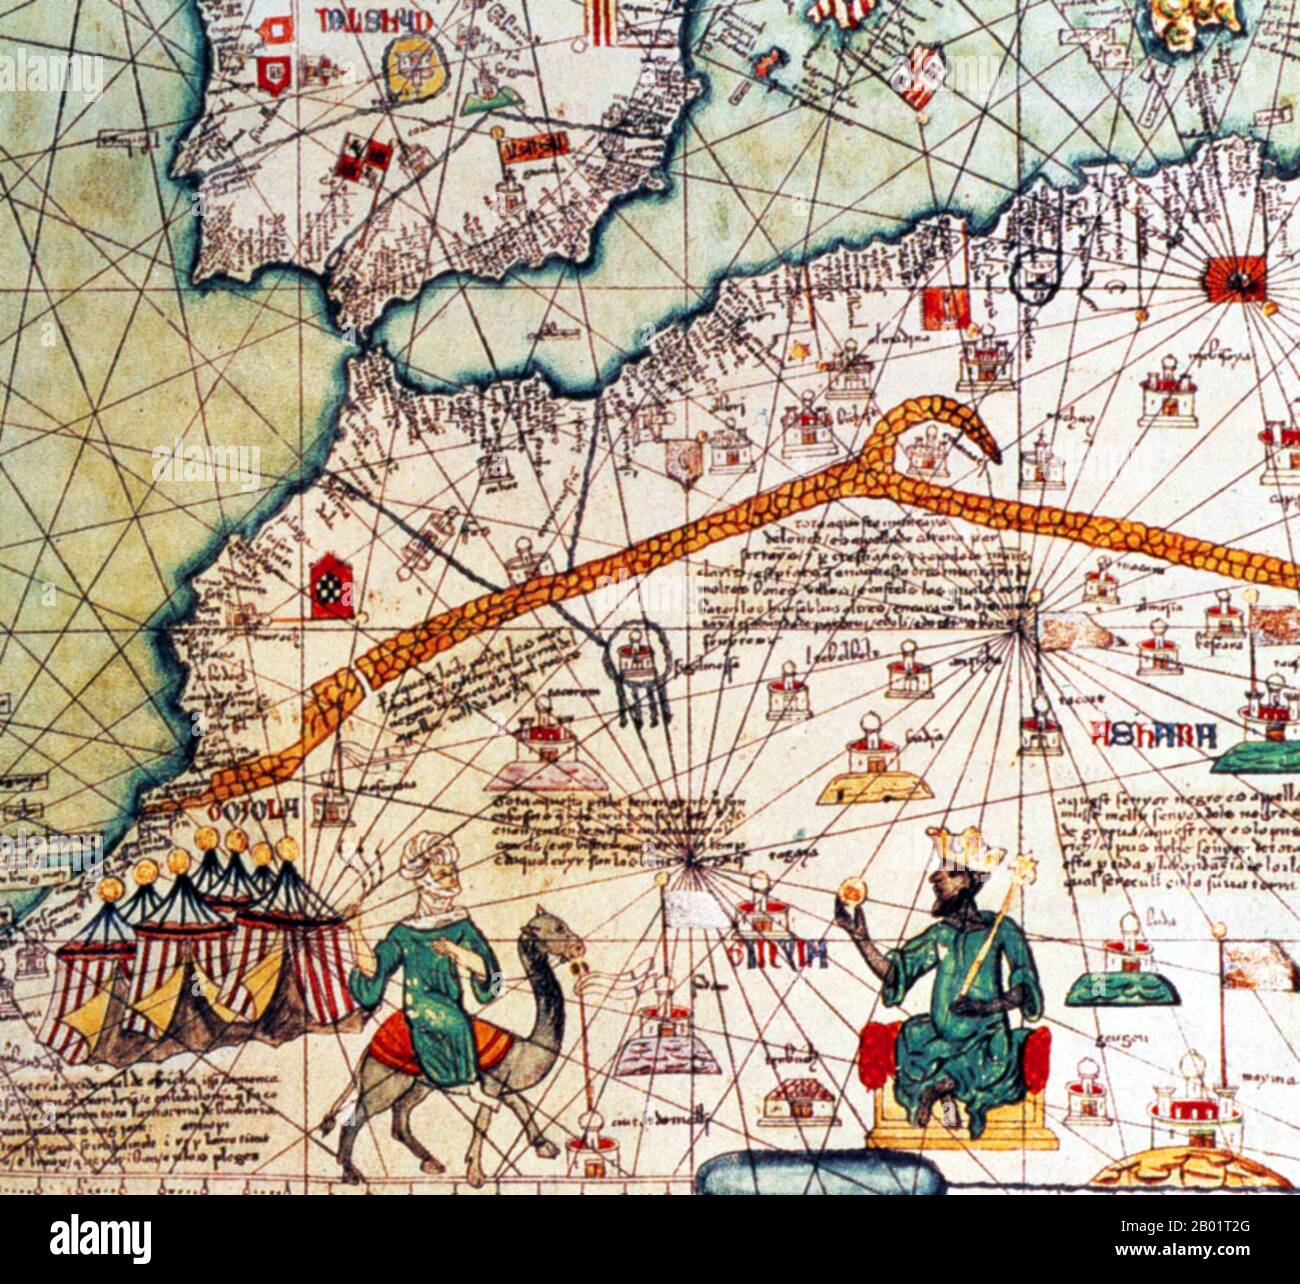 Mali : Mansa Musa (c. 1280-1337), roi du Mali, tenant un sceptre et une pièce d'or. Détail de l'Atlas catalan par Abraham Cresques, 1375. Moussa Ier, communément appelé Mansa Musa, était la dixième mansa, qui se traduit par « roi des rois » ou « empereur », de l'Empire malien. À l'époque de l'accession au trône de Mansa Musa, l'Empire malien se composait de territoires appartenant autrefois à l'Empire du Ghana et à Melle (Mali) et de zones environnantes immédiates. Musa détient de nombreux titres, dont celui d'émir de Melle, seigneur des Mines de Wangara, et conquérant de Ghanata, de Futa-Jallon et d'une douzaine d'autres États. Banque D'Images